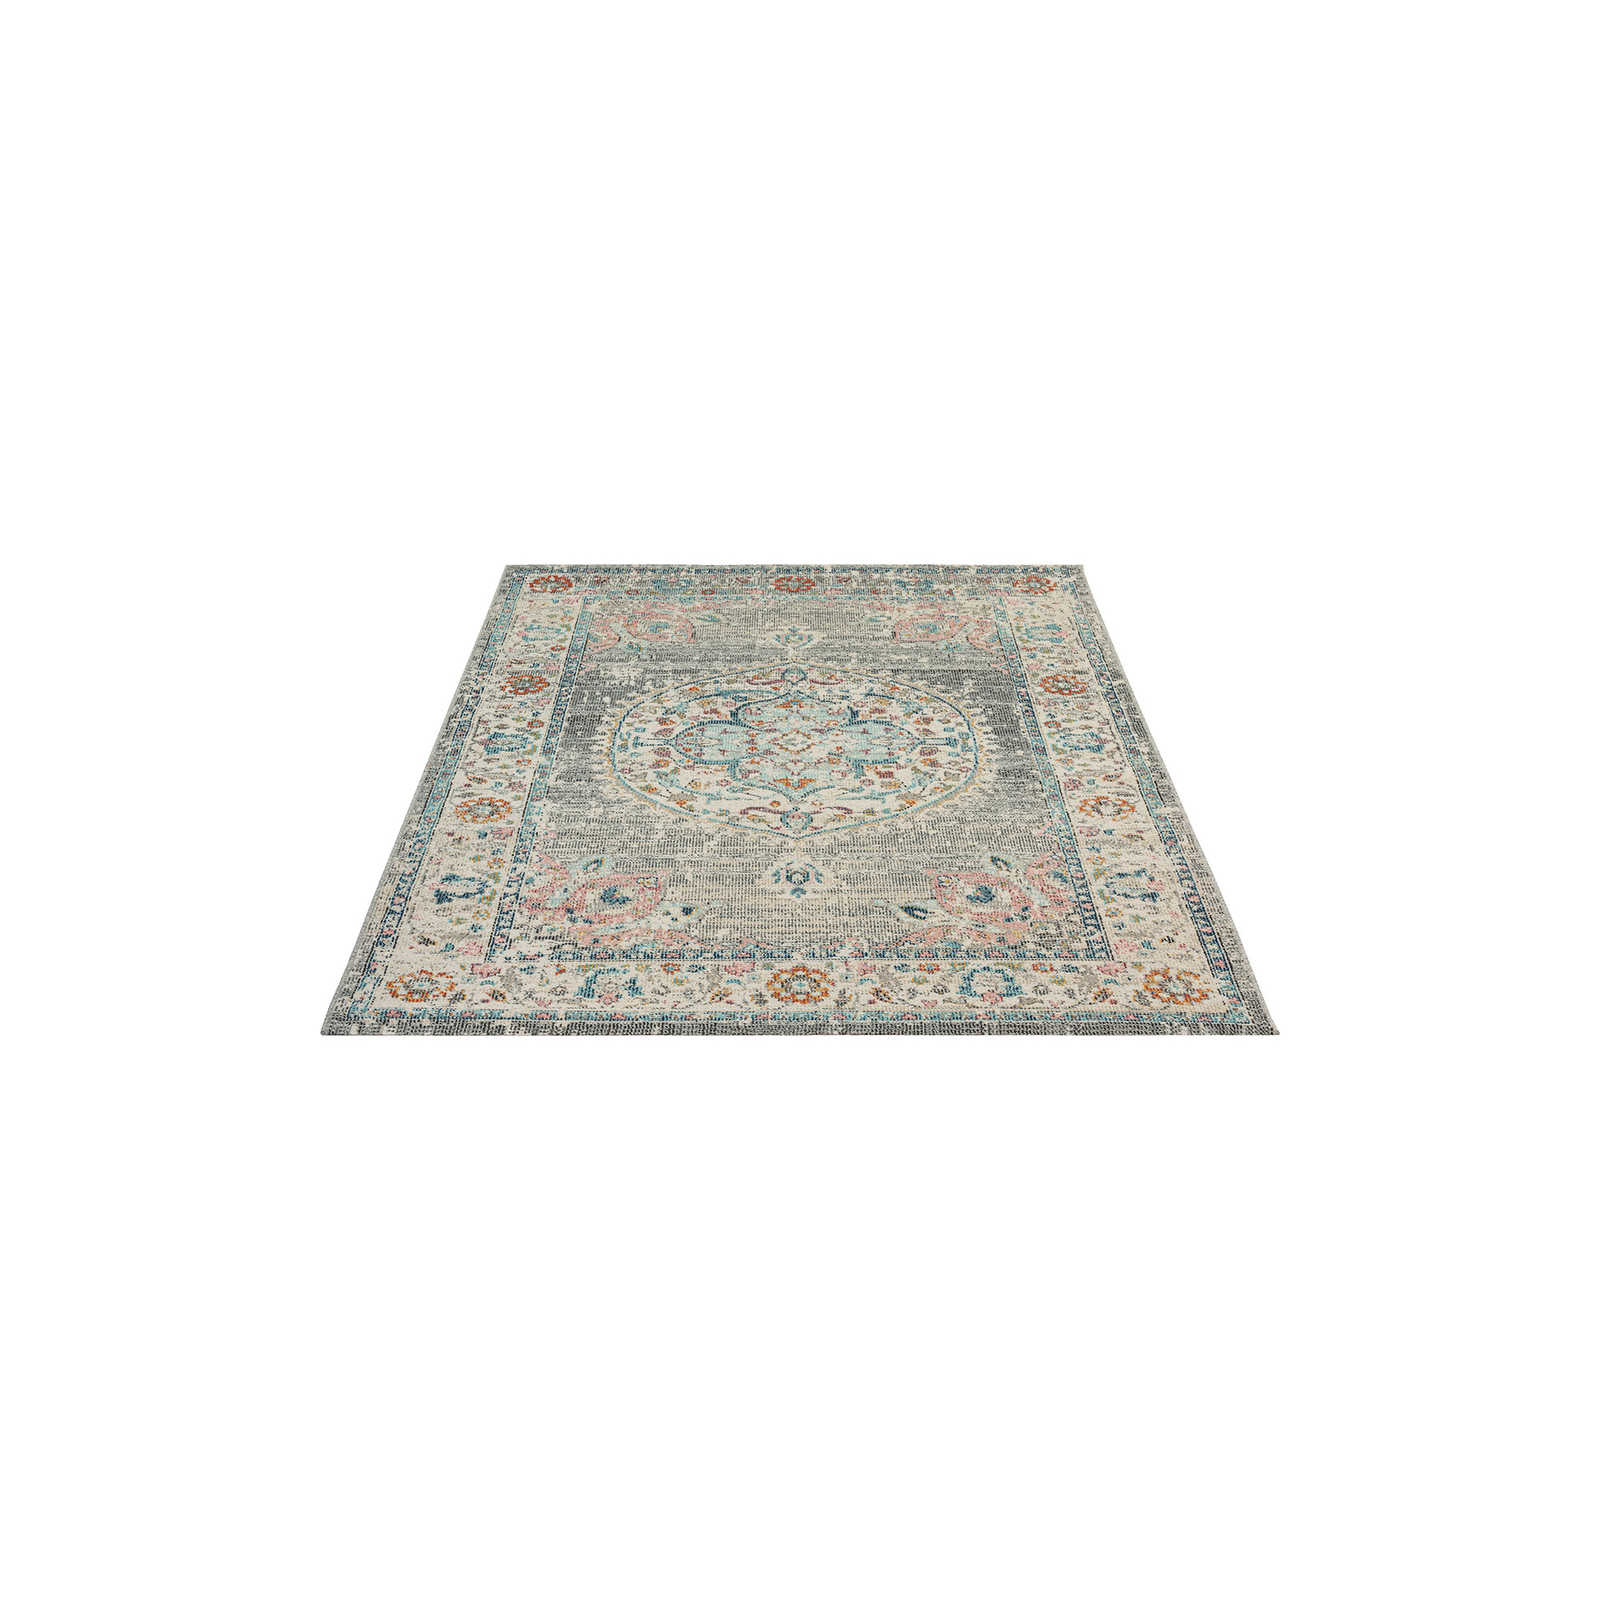 Grauer Outdoor Teppich aus Flachgewebe – 200 x 140 cm
